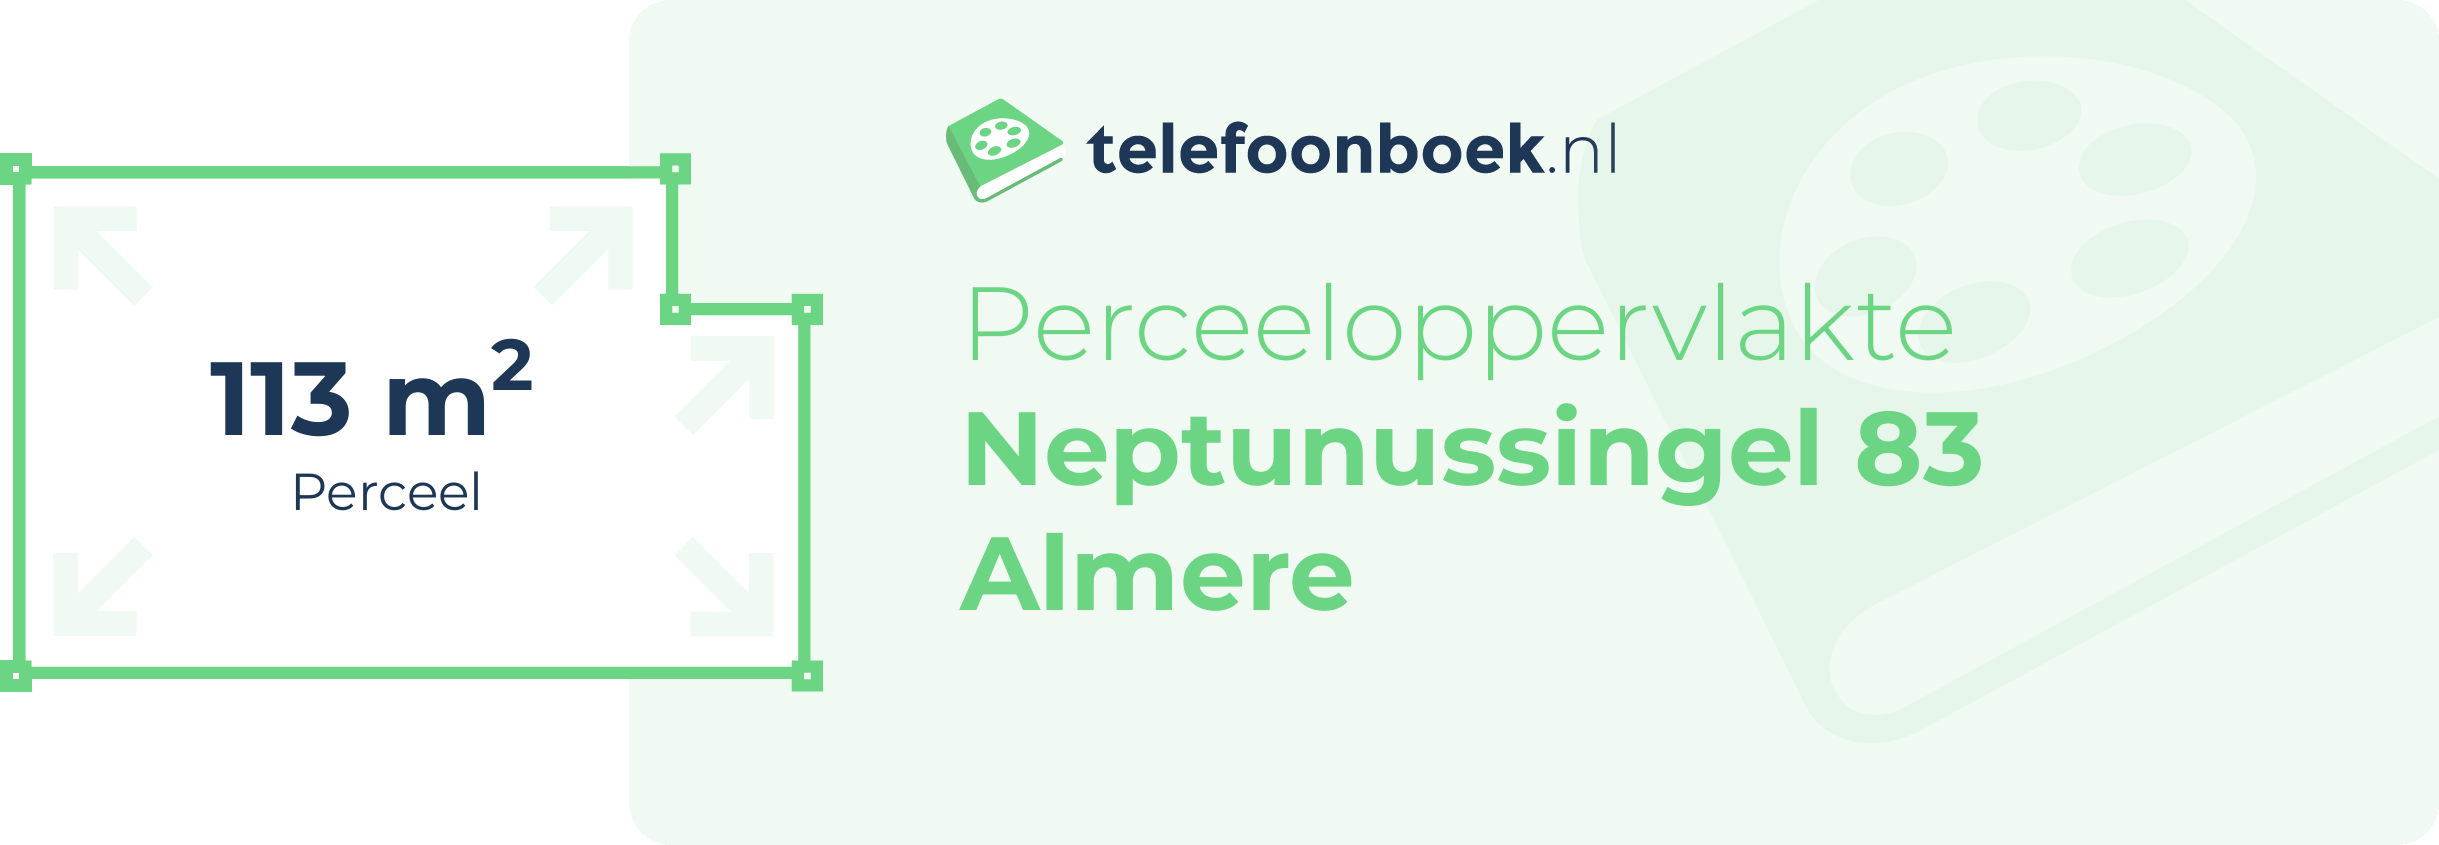 Perceeloppervlakte Neptunussingel 83 Almere